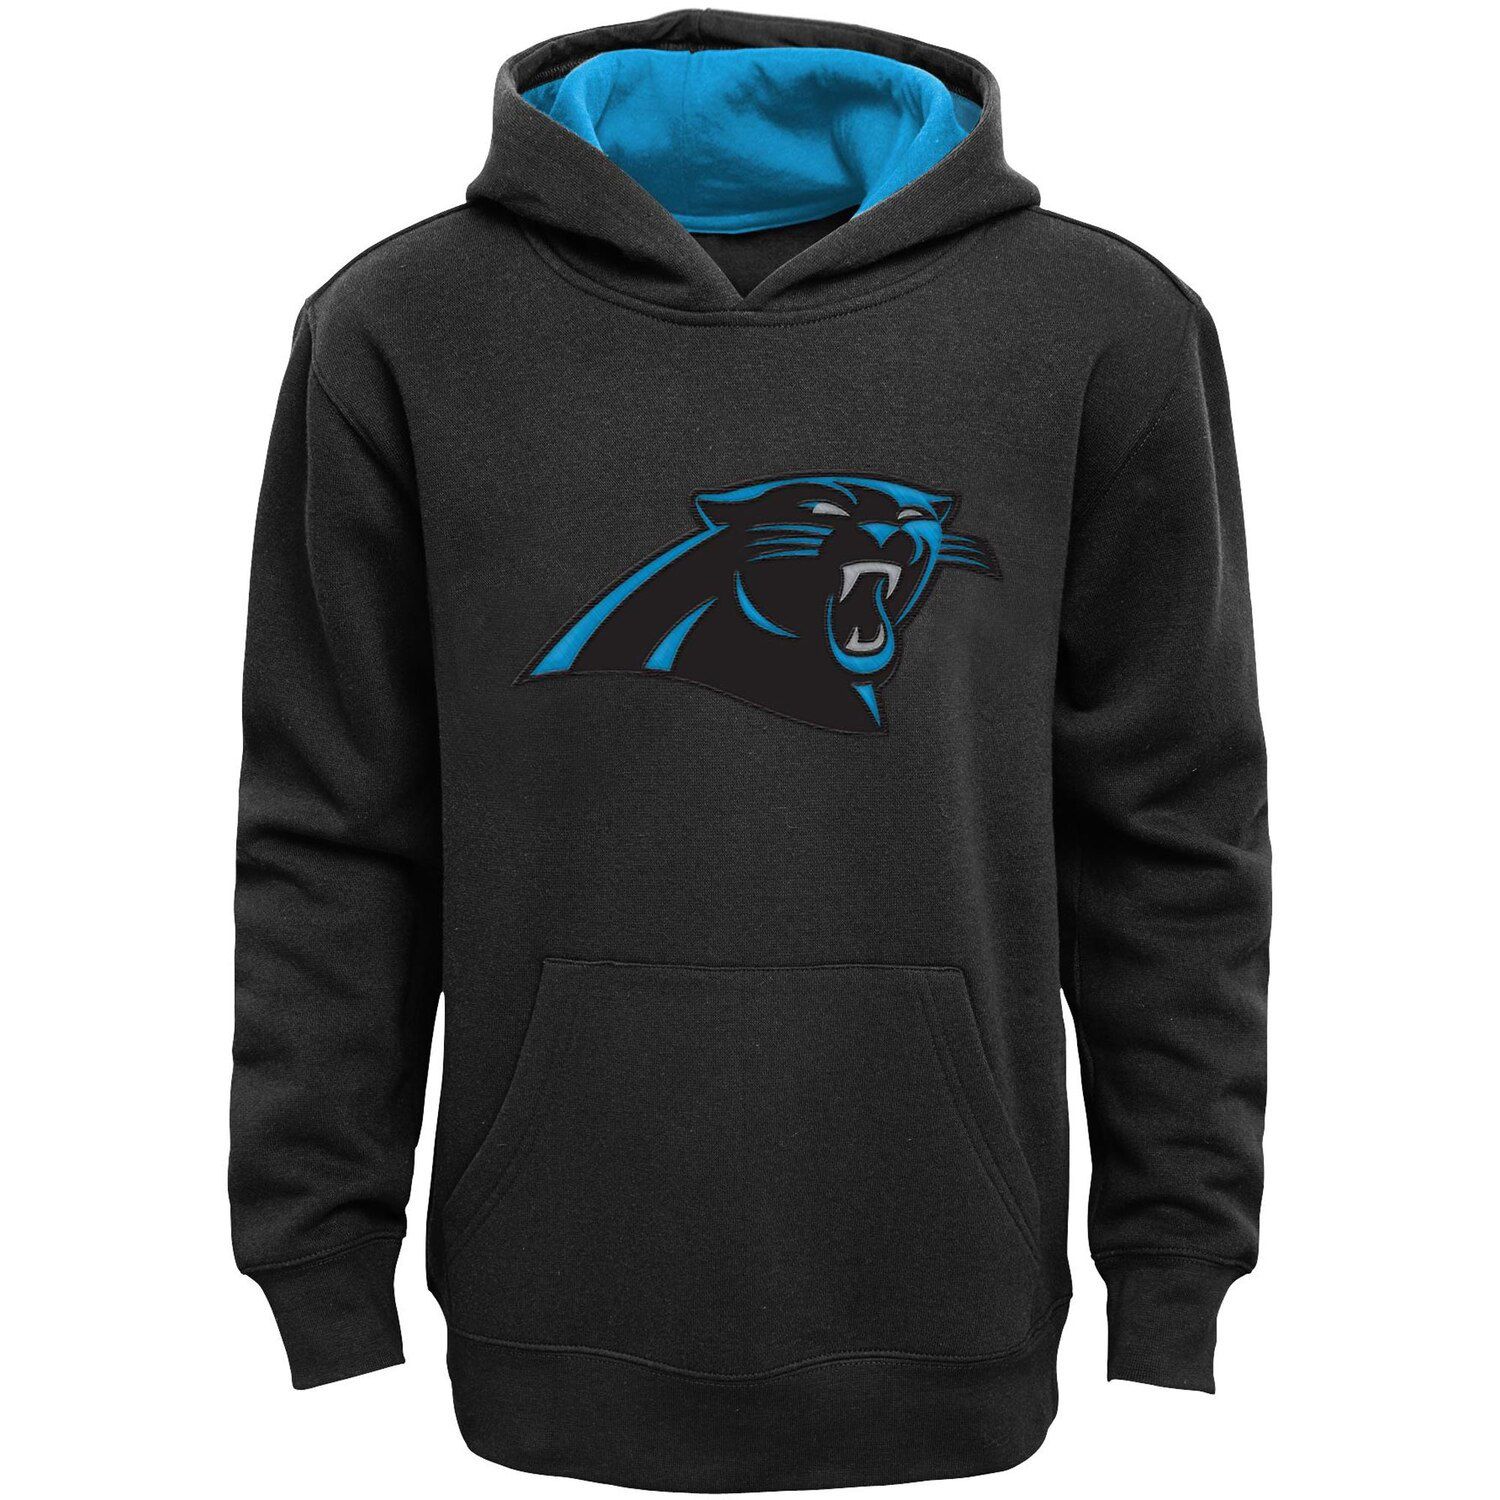 Panthers fan gear